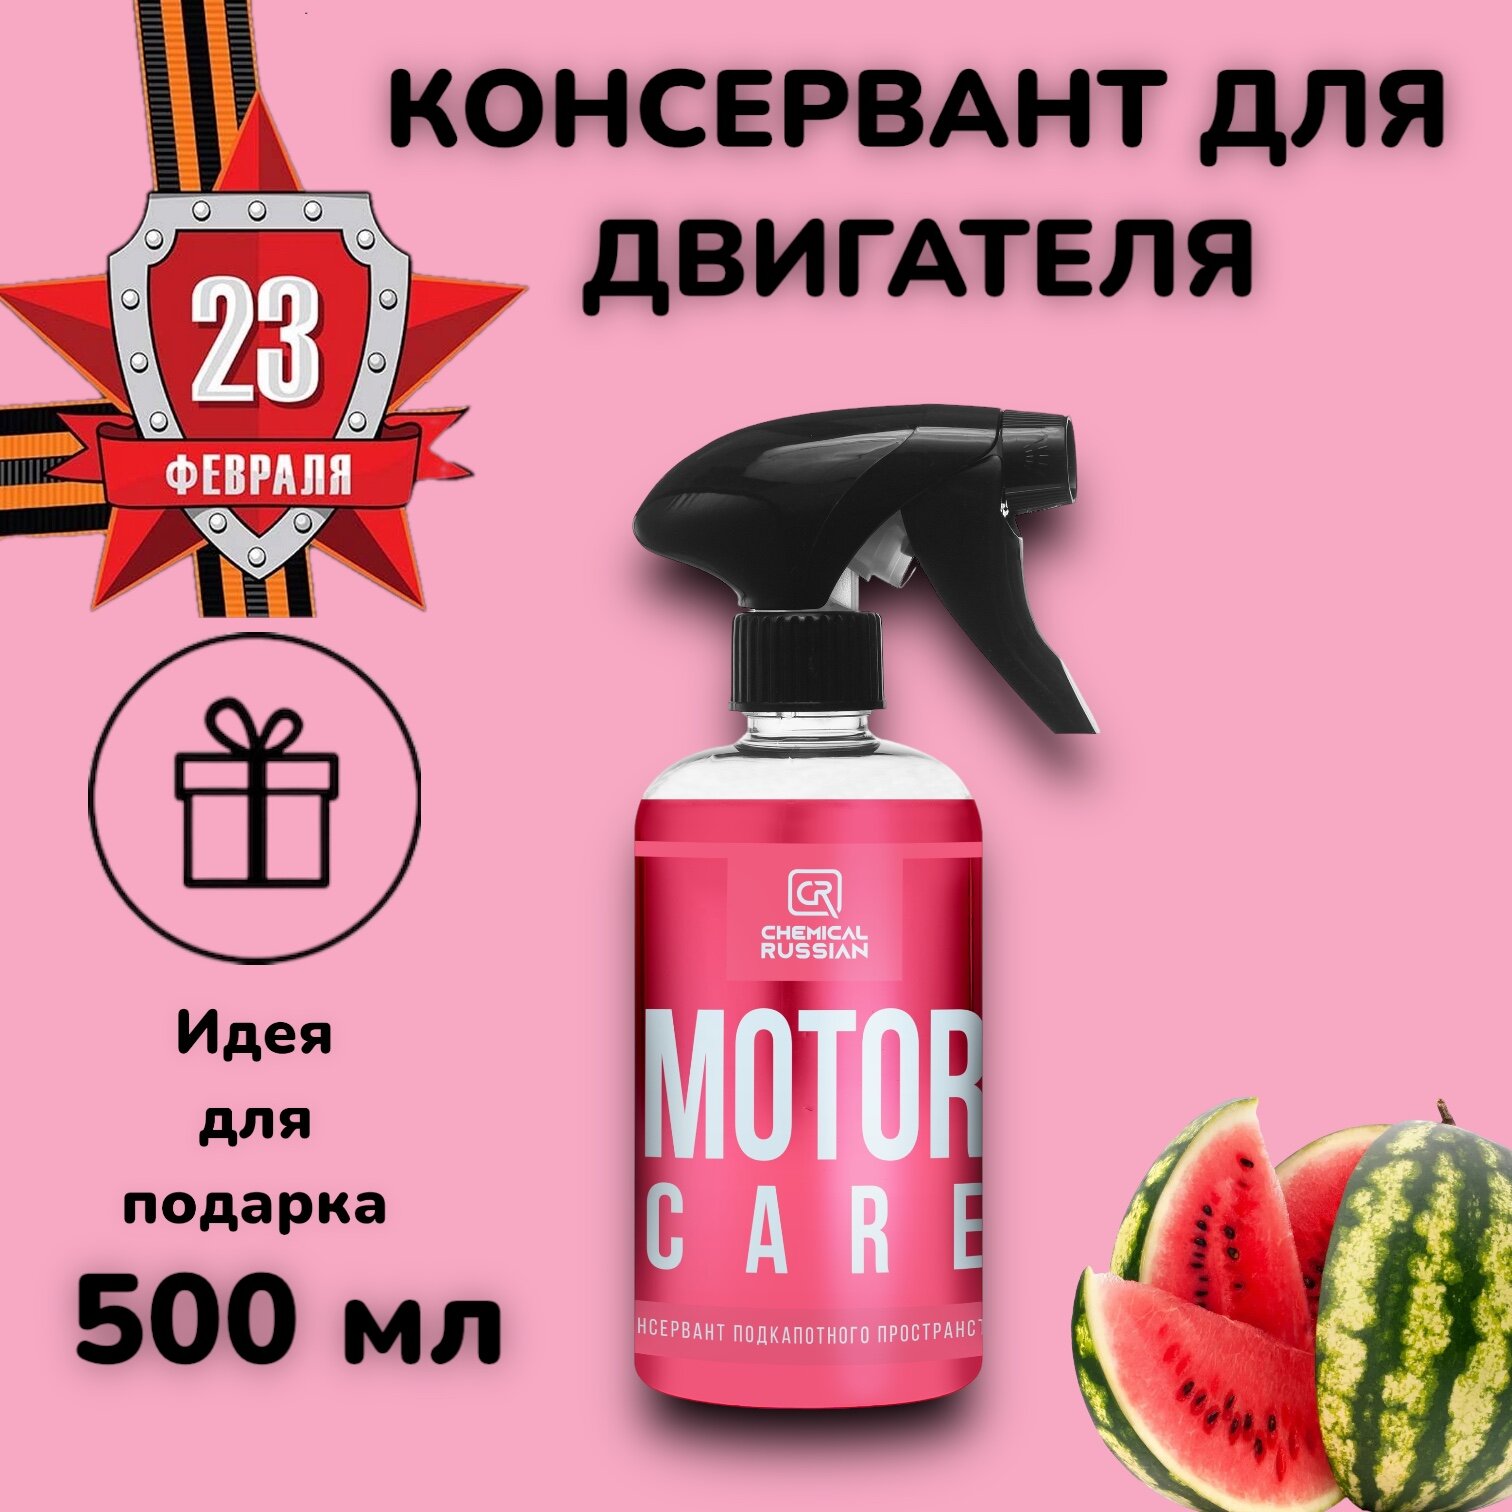 Motor Care - Консервант подкапотного пространства 500 мл CR845 Chemical Russian